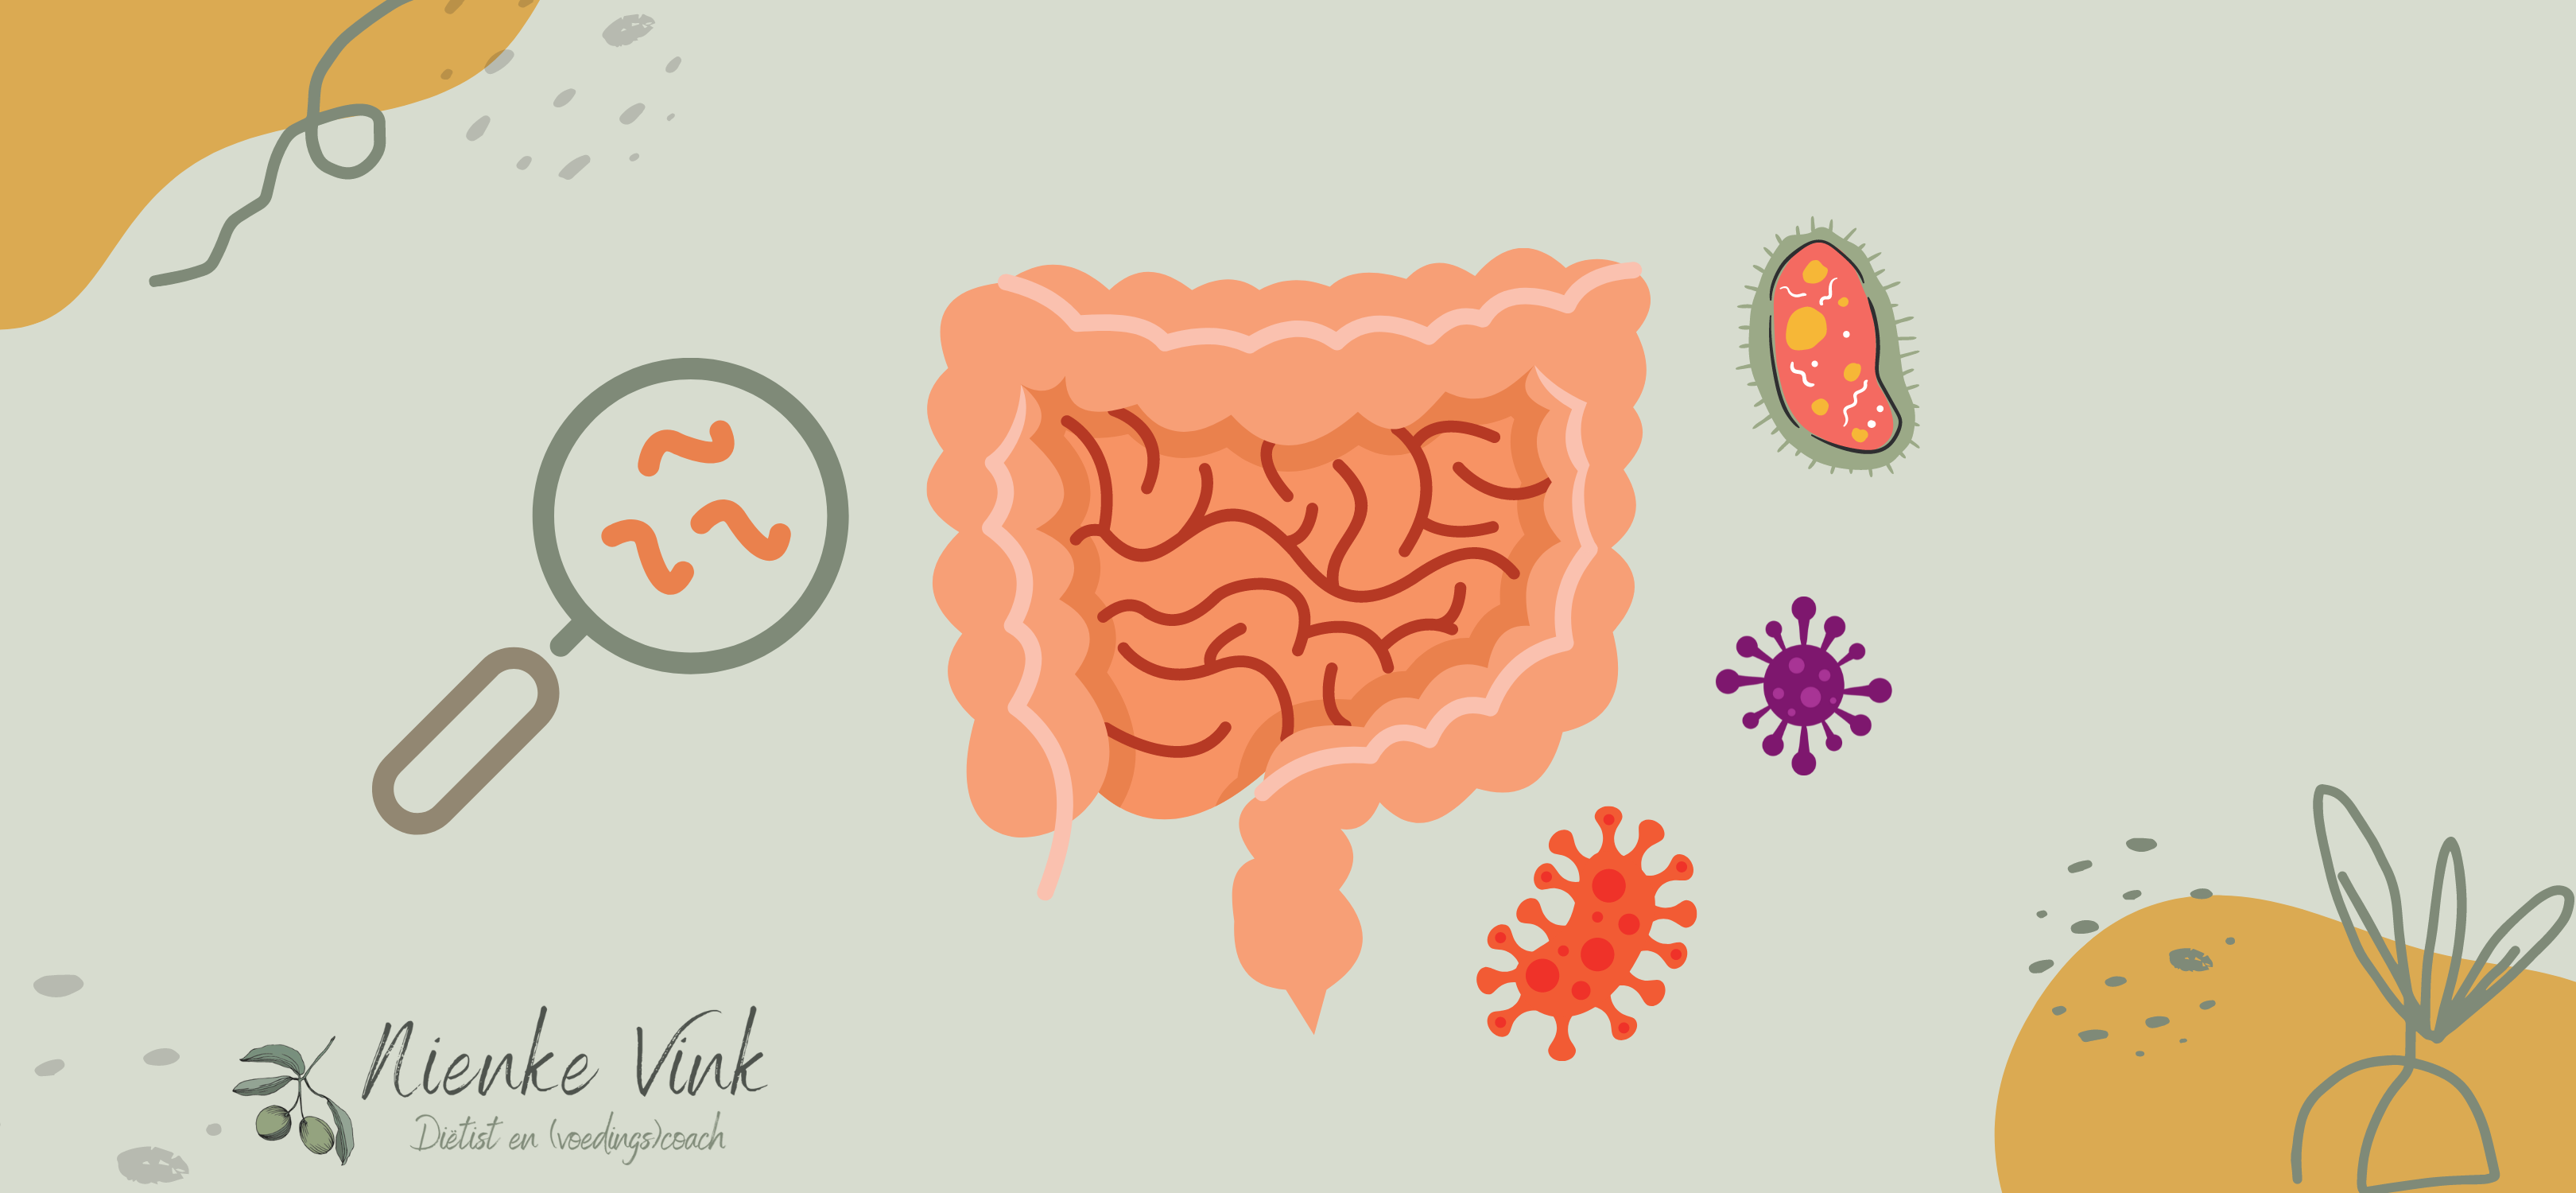 Wat is het verschil tussen probiotica en prebiotica?